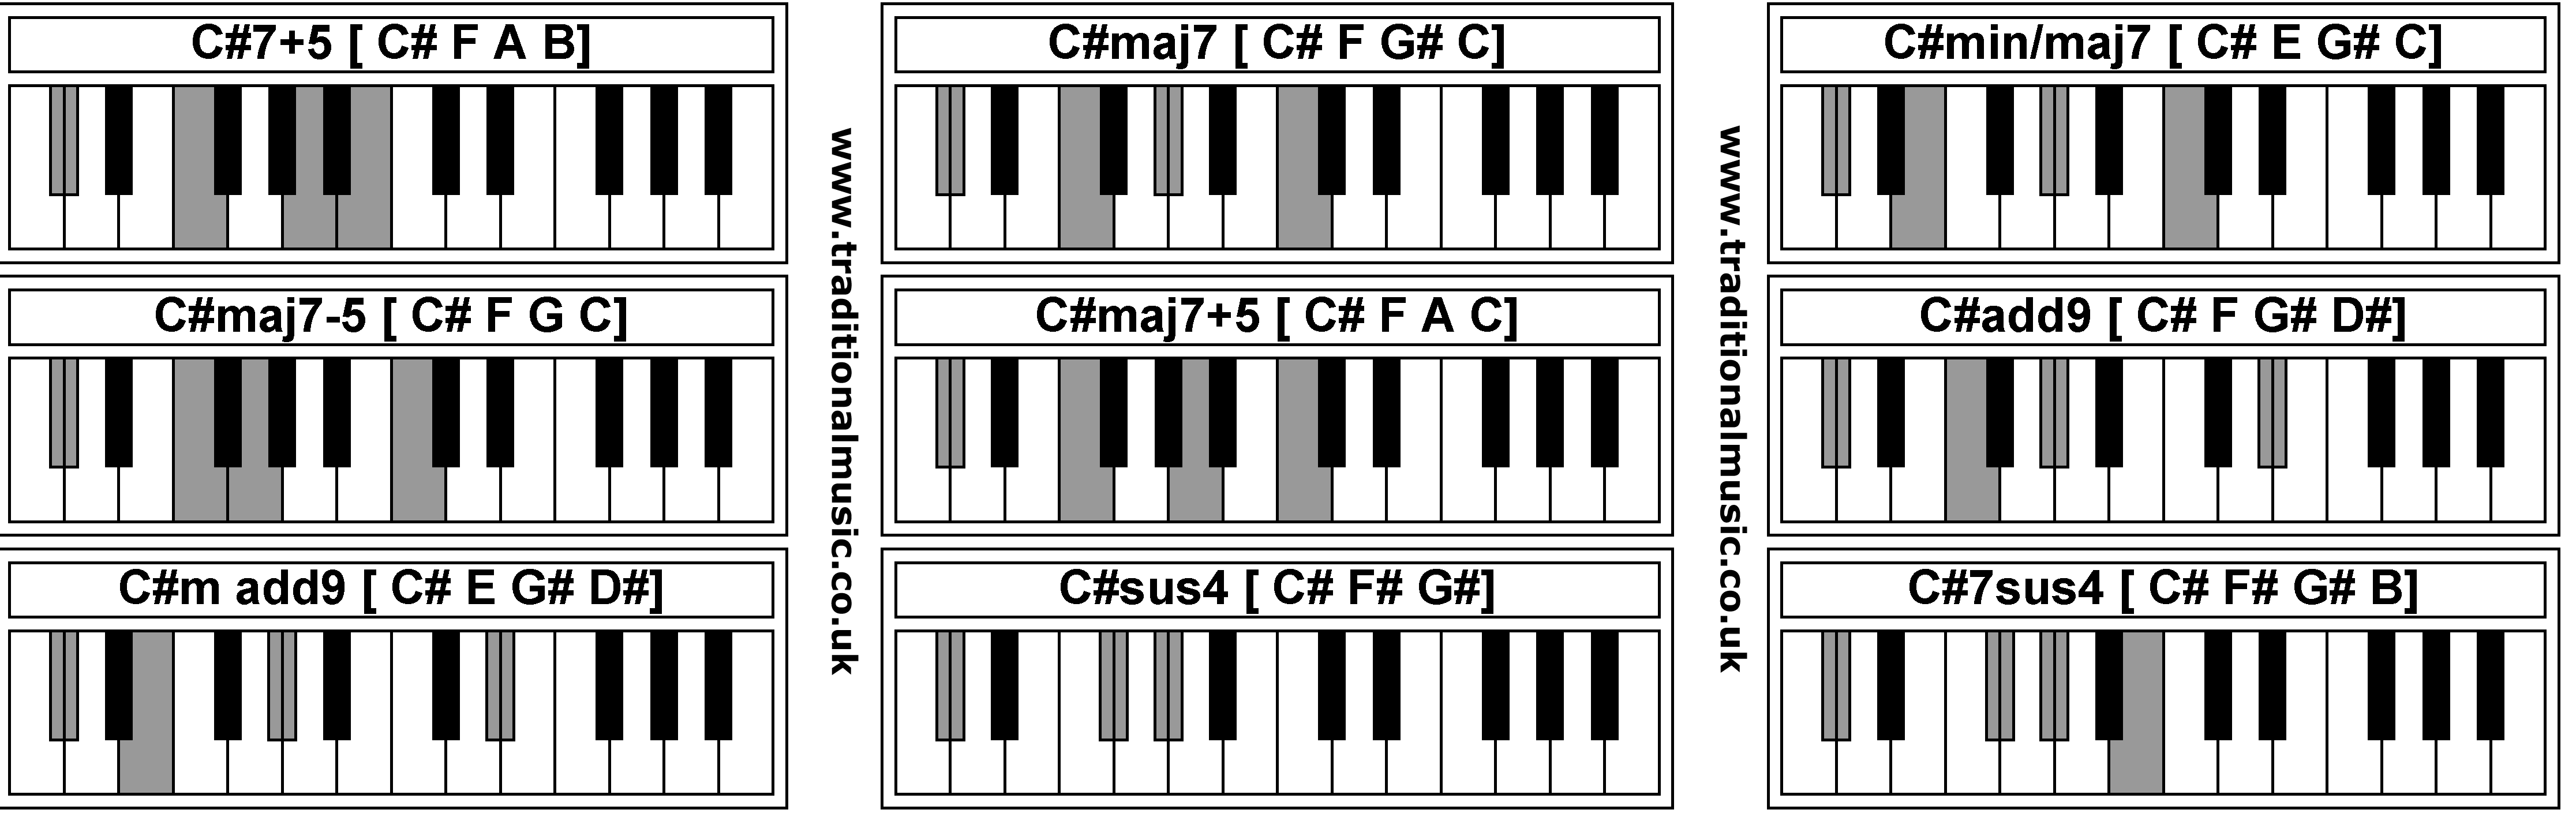 Piano Chords - C#7+5  C#maj7  C#min/maj7  C#maj7-5  C#maj7+5  C#add9  C#m add9  C#sus4  C#7sus4